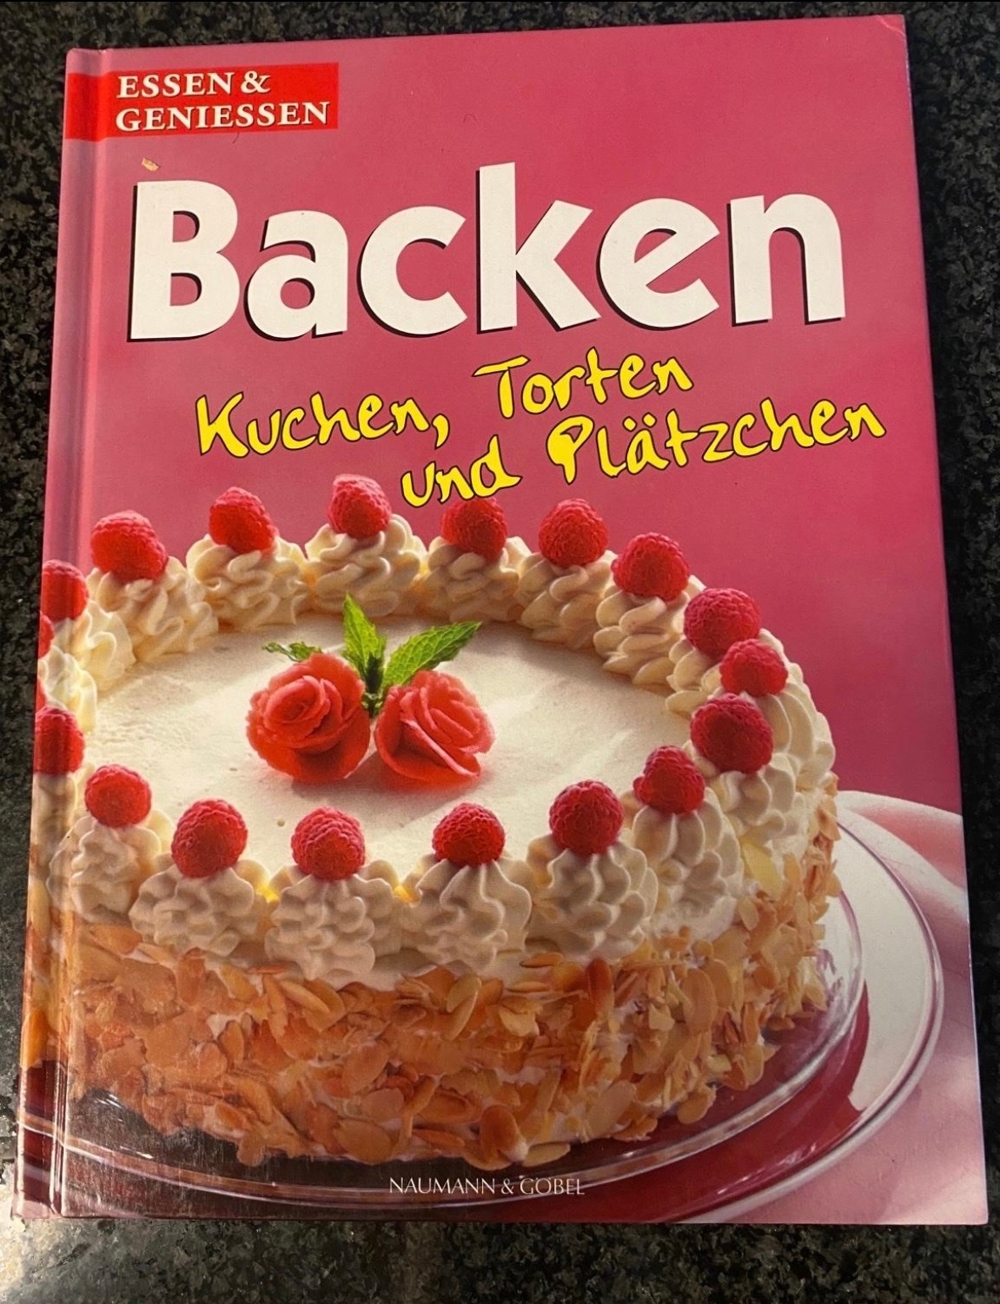 Backbuch